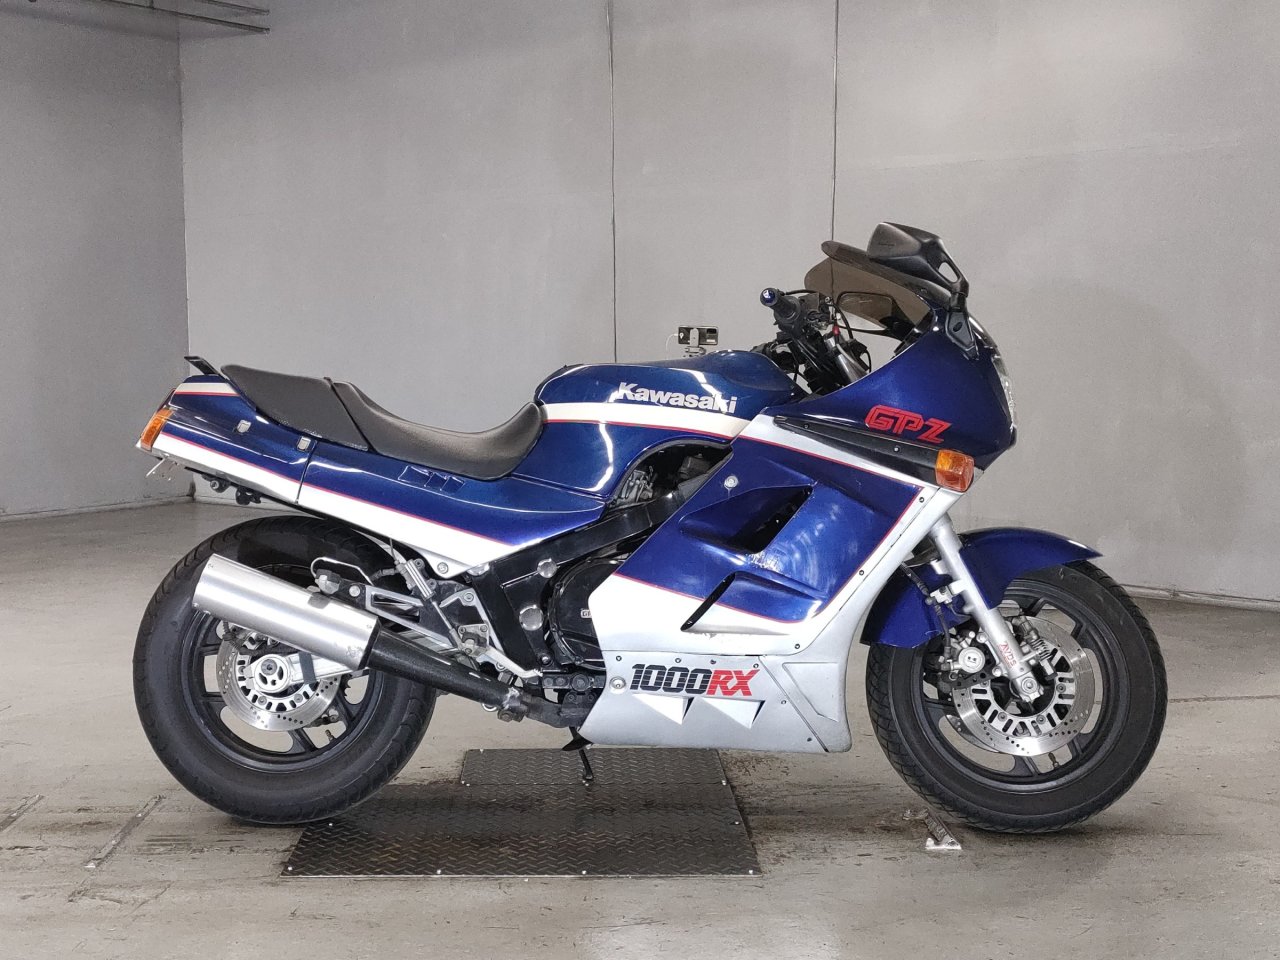 Kawasaki GPZ1000RX - Adamoto - Motorcycles from Japan